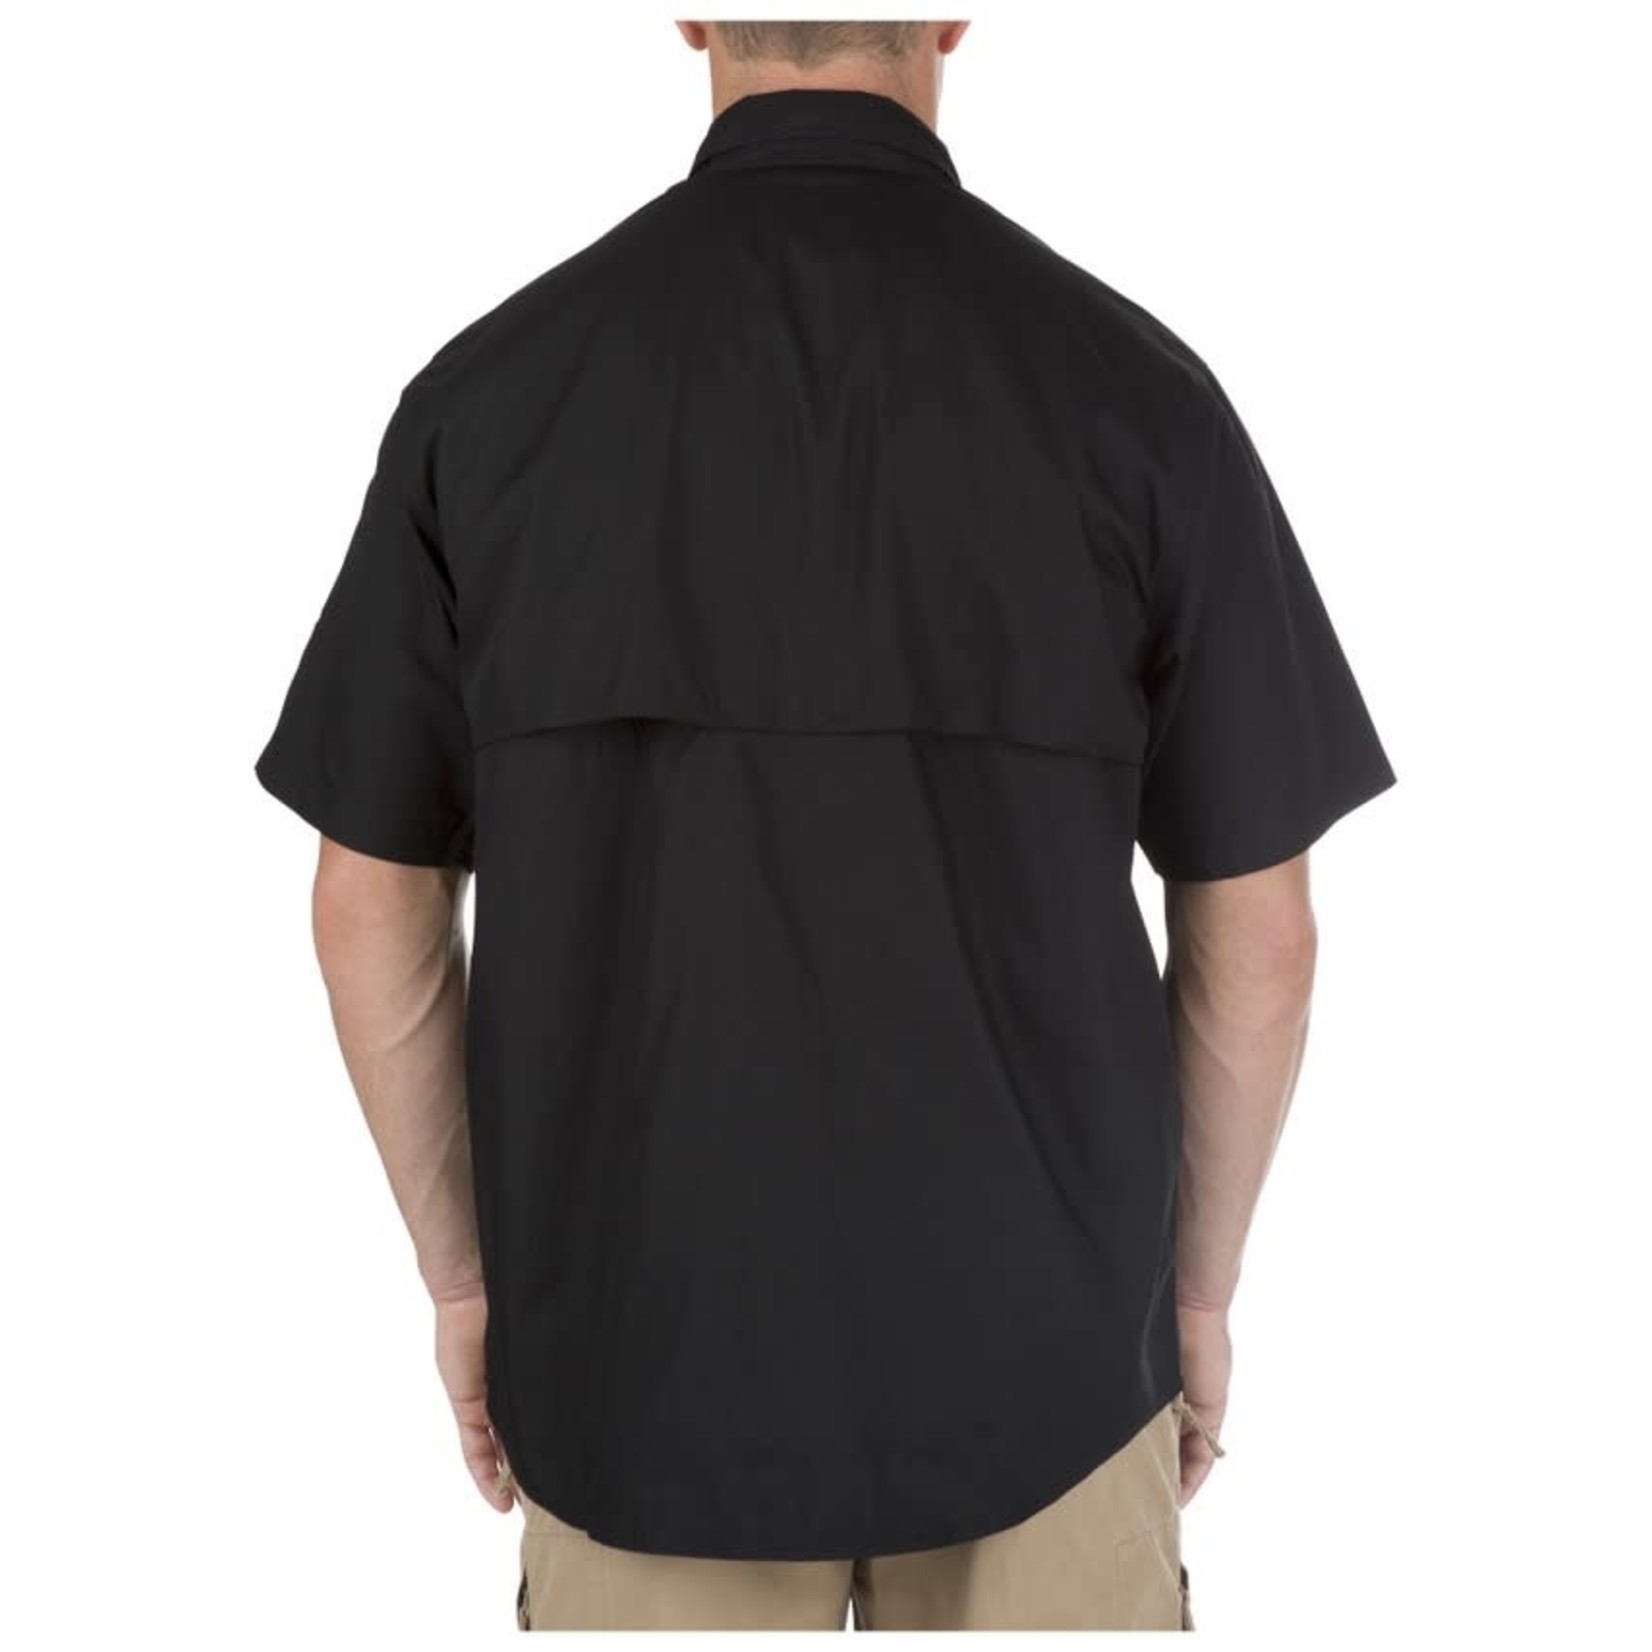 5.11 Tactical 5.11 Men's Taclite Pro s/s Shirt